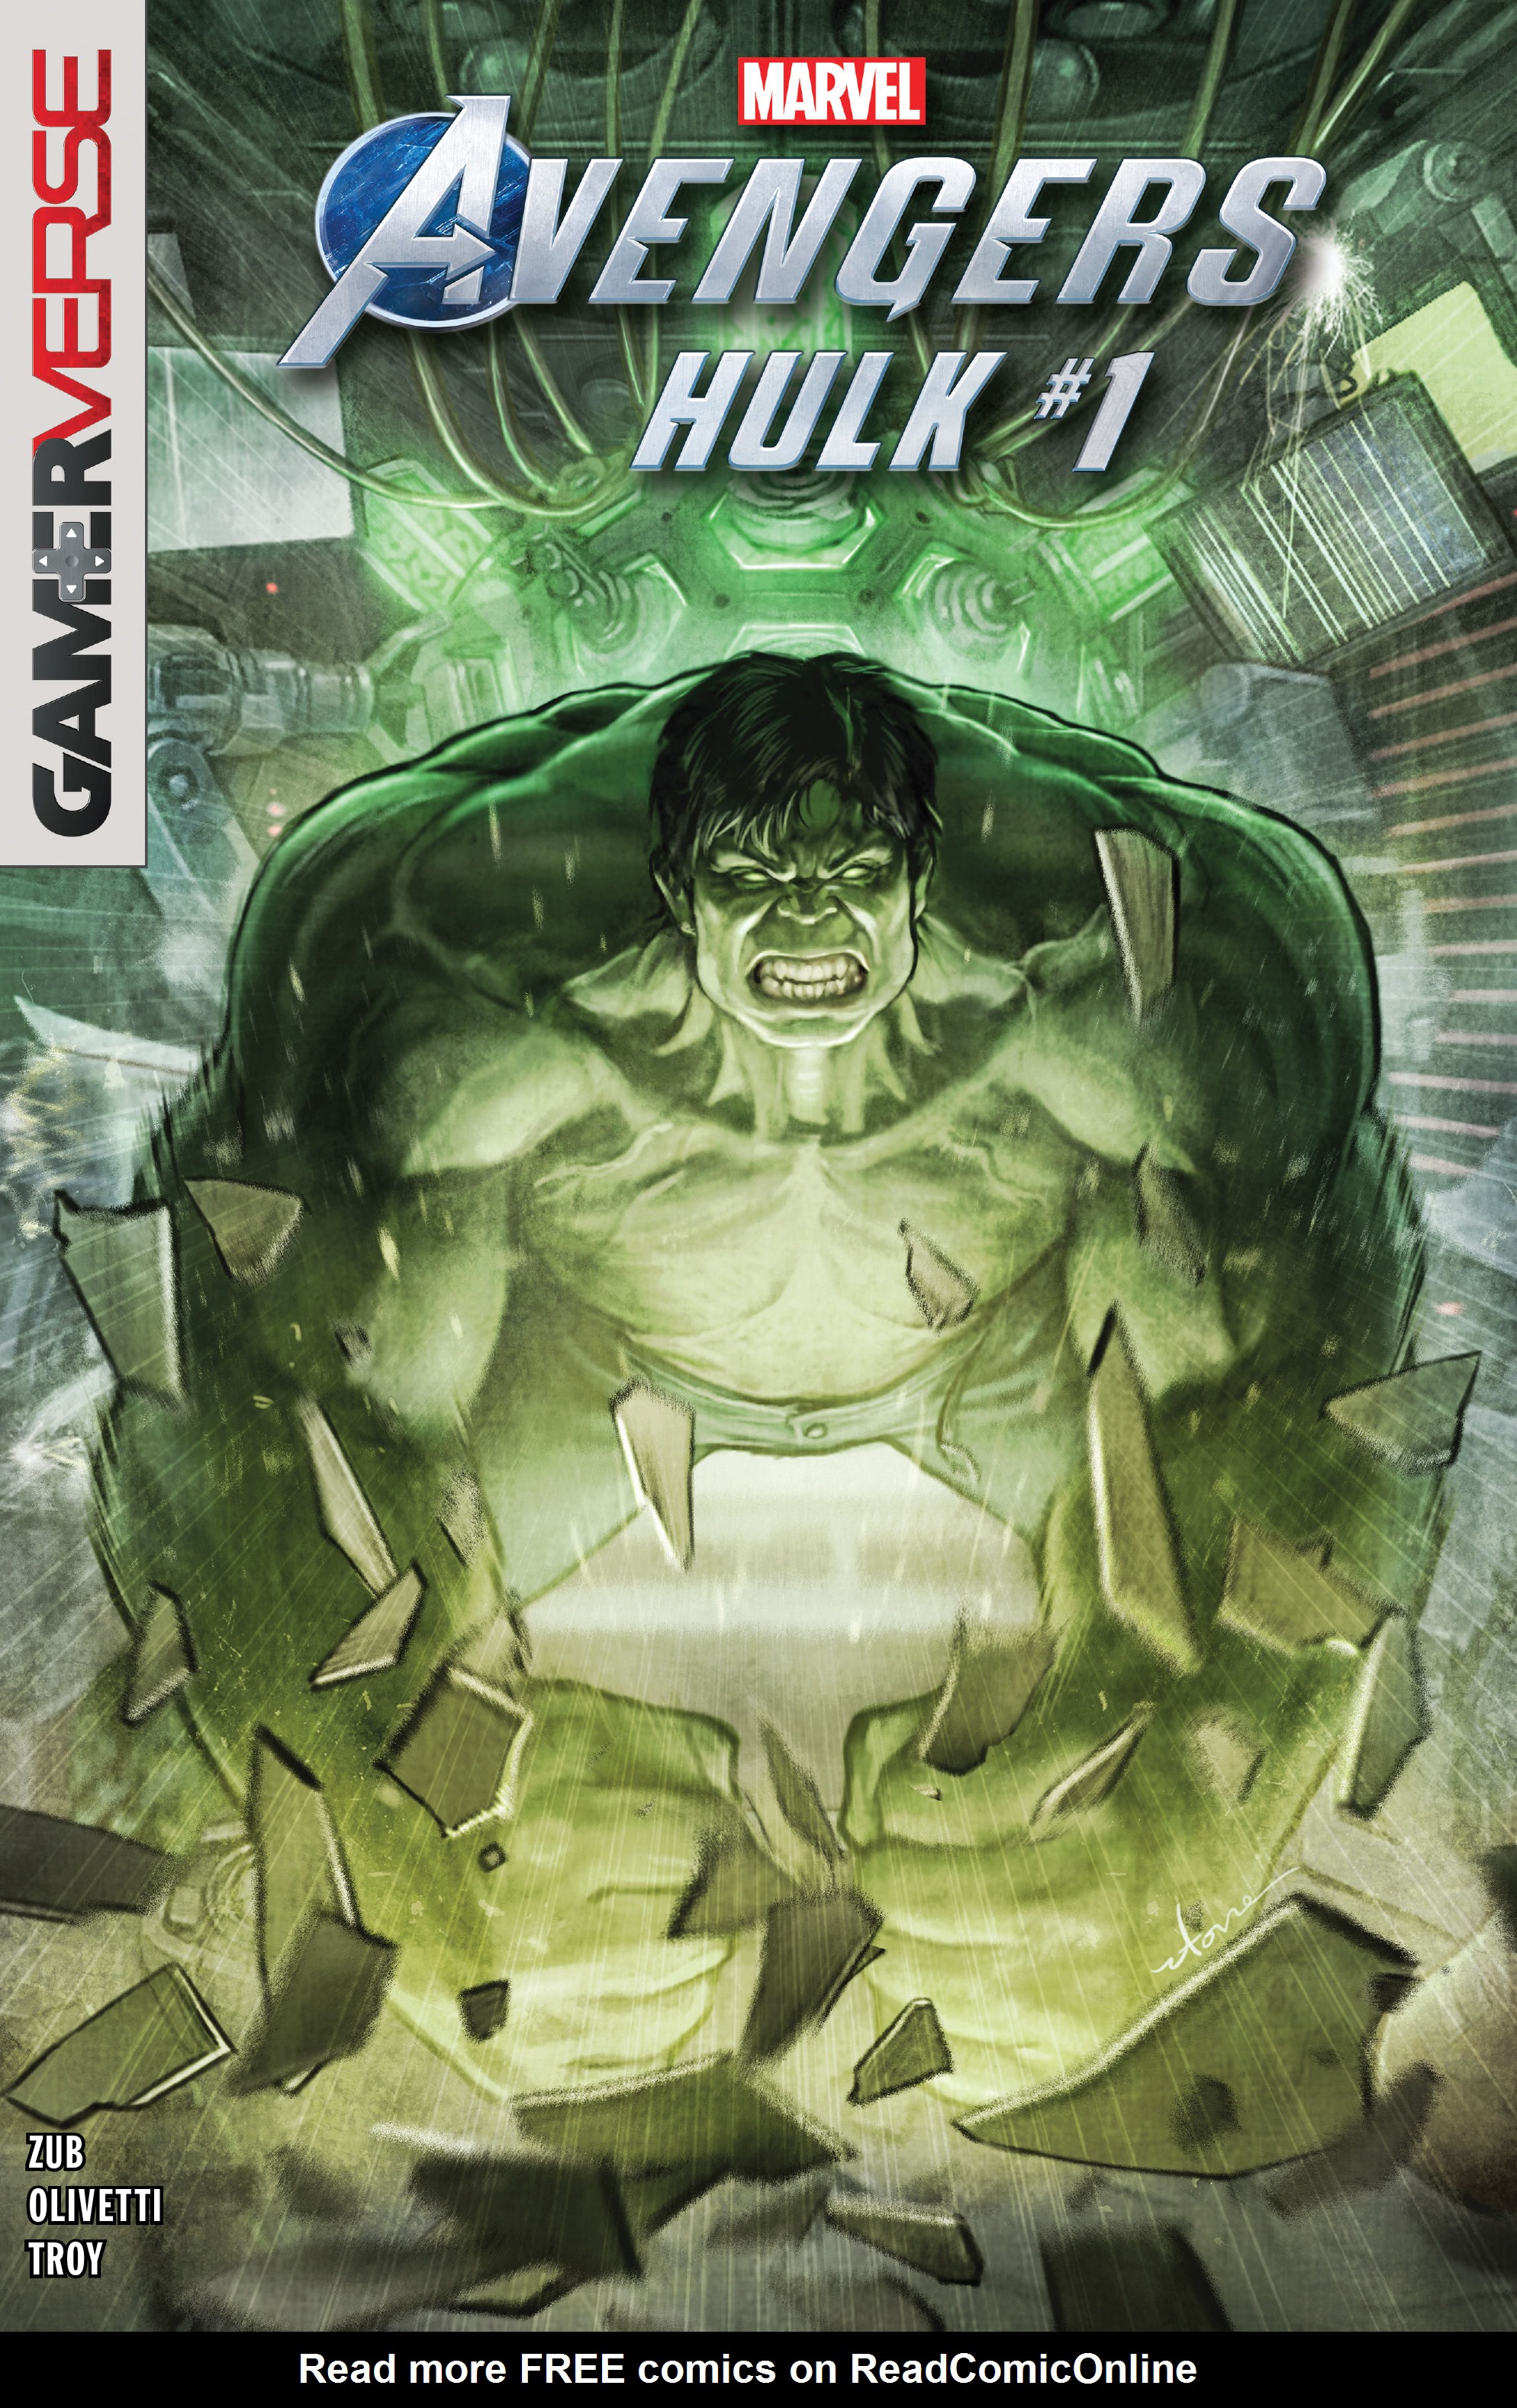 Read online Marvel's Avengers comic -  Issue # Hulk - 1